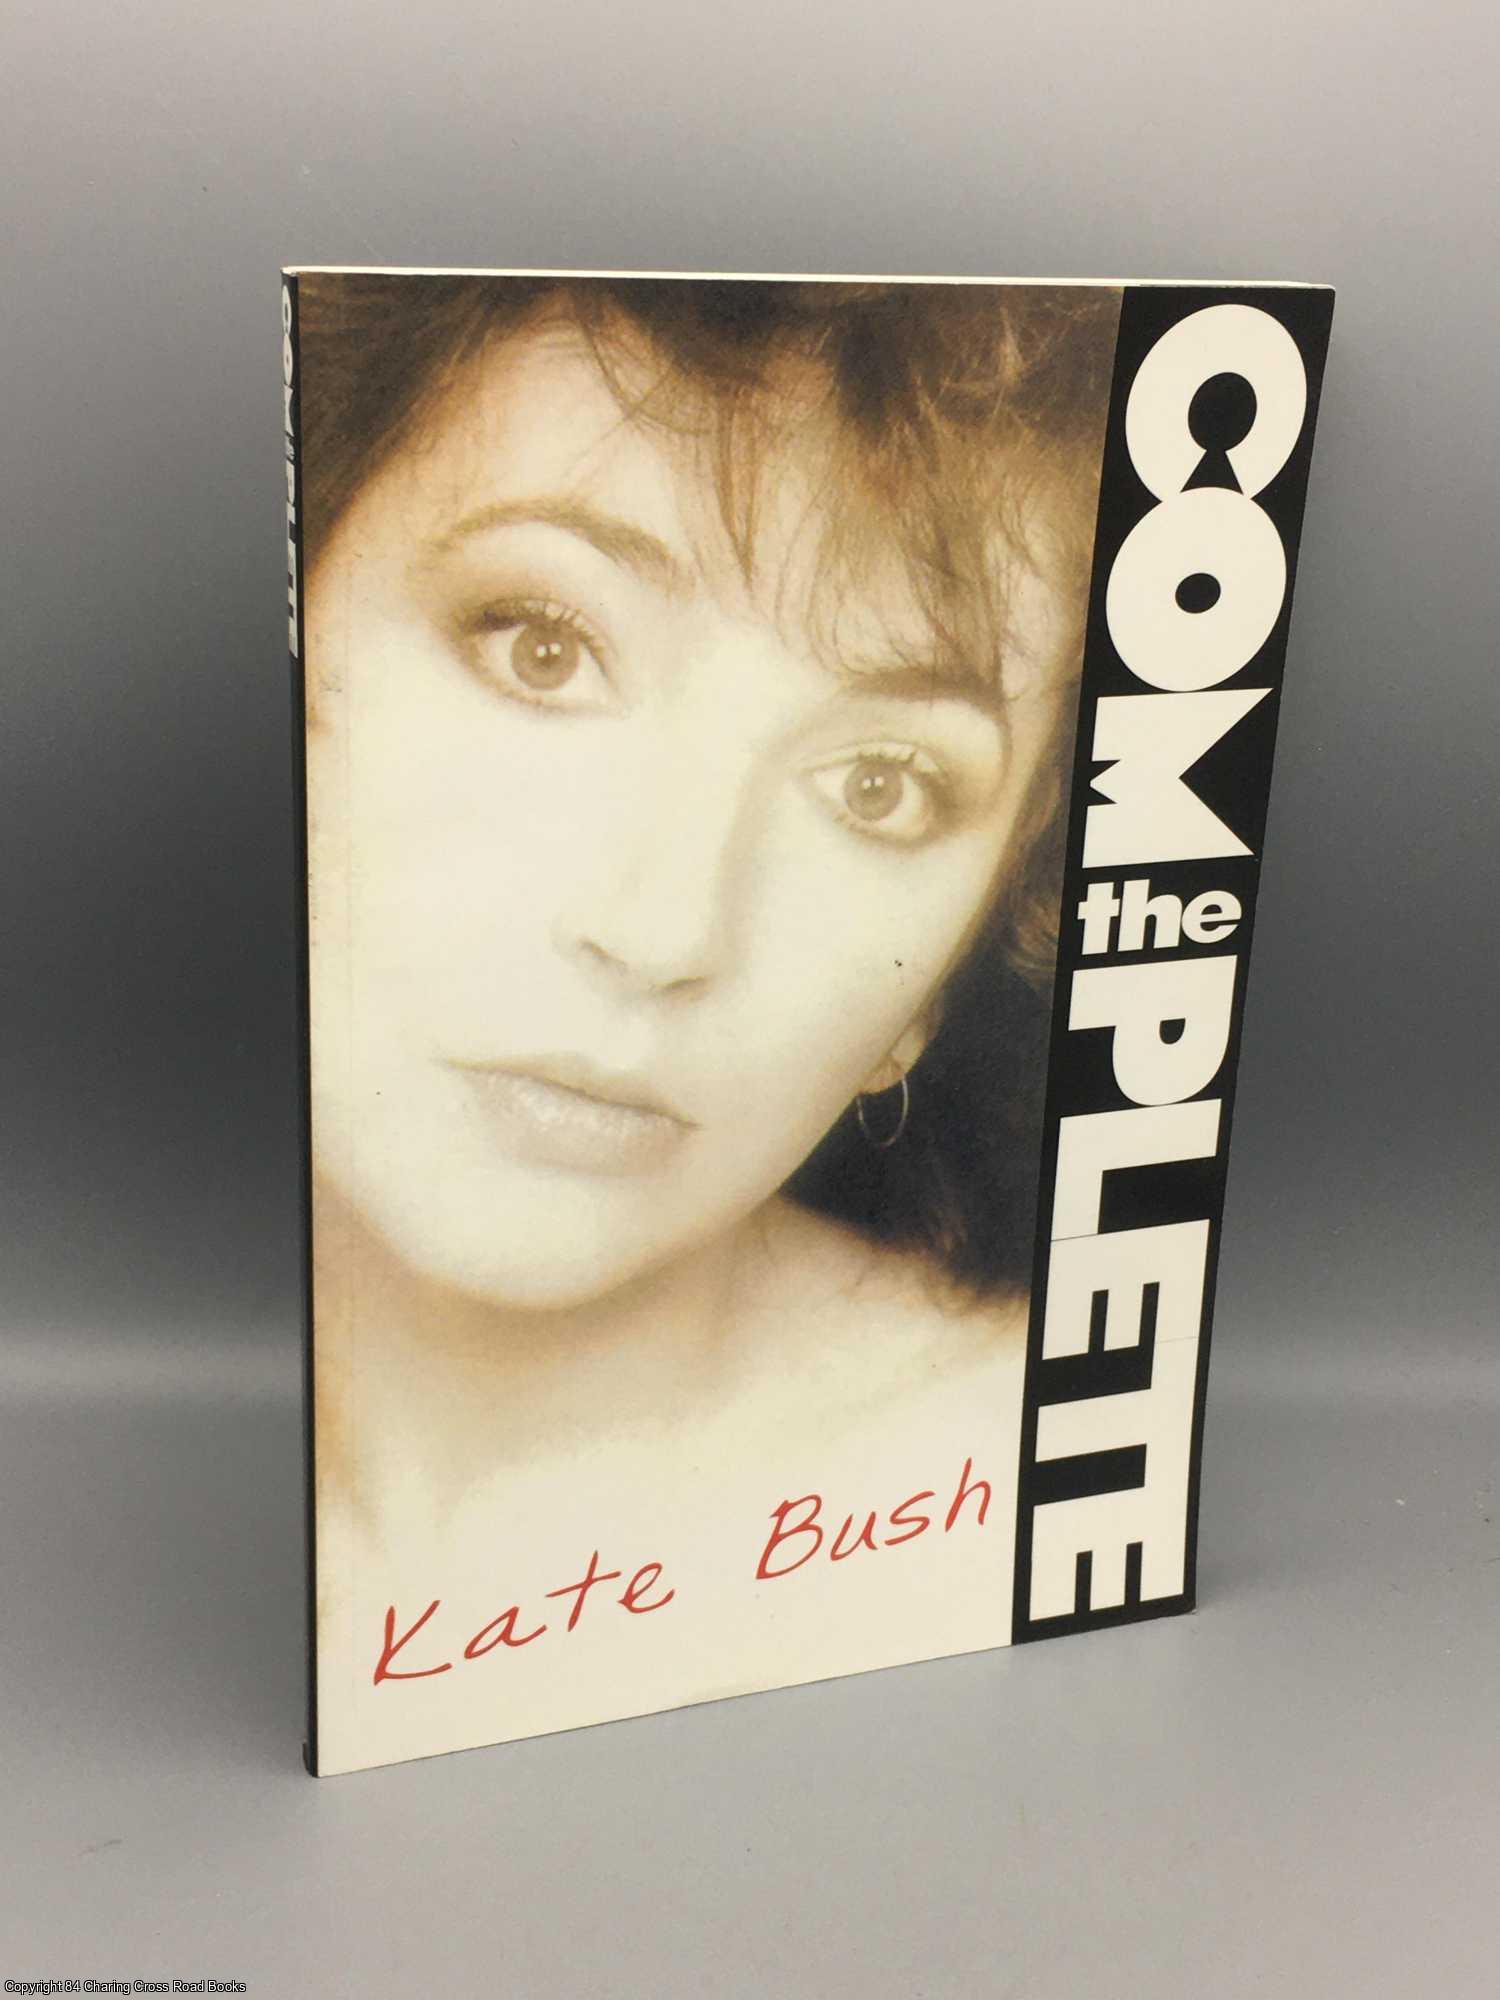 Bush, Kate - The Complete Kate Bush